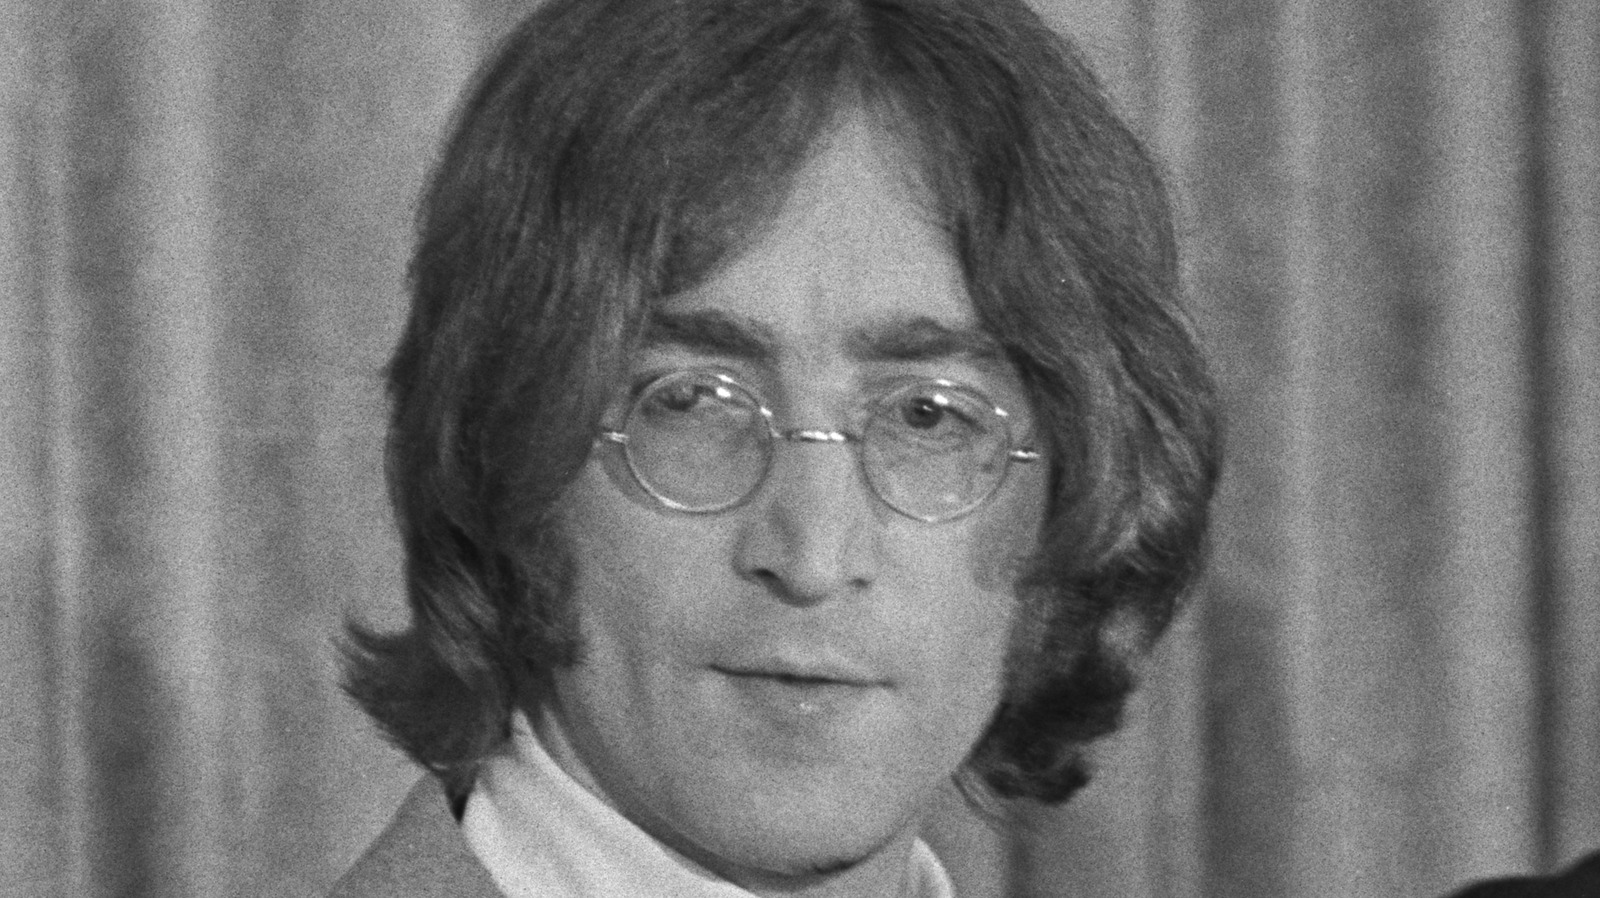 John Lennon - Woman - Lyrics e Tradução 